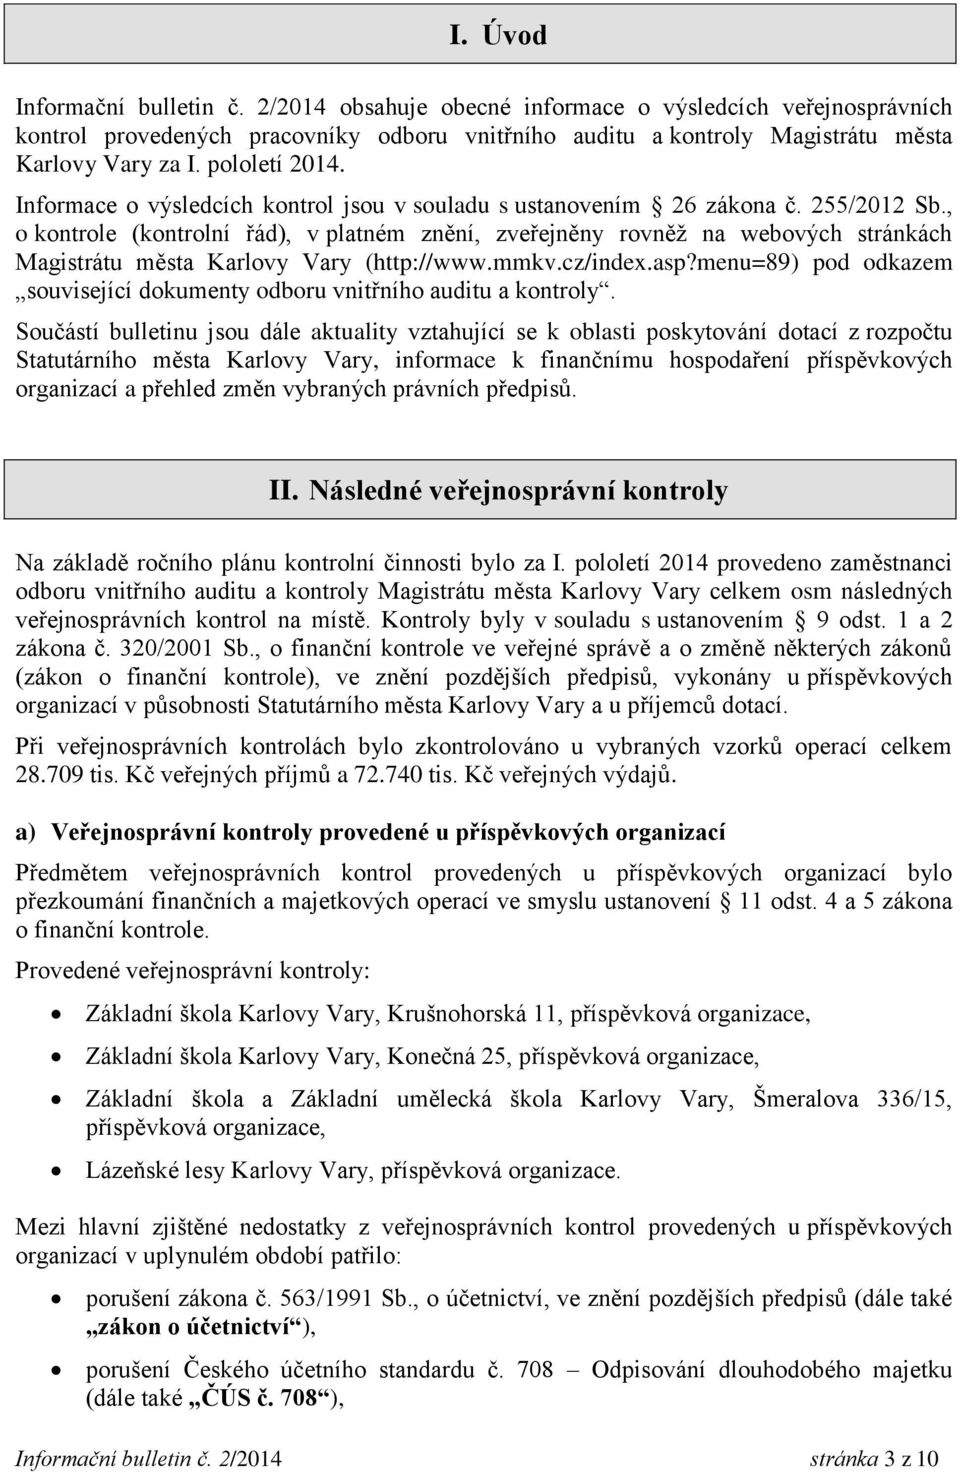 , o kontrole (kontrolní řád), v platném znění, zveřejněny rovněž na webových stránkách Magistrátu města Karlovy Vary (http://www.mmkv.cz/index.asp?